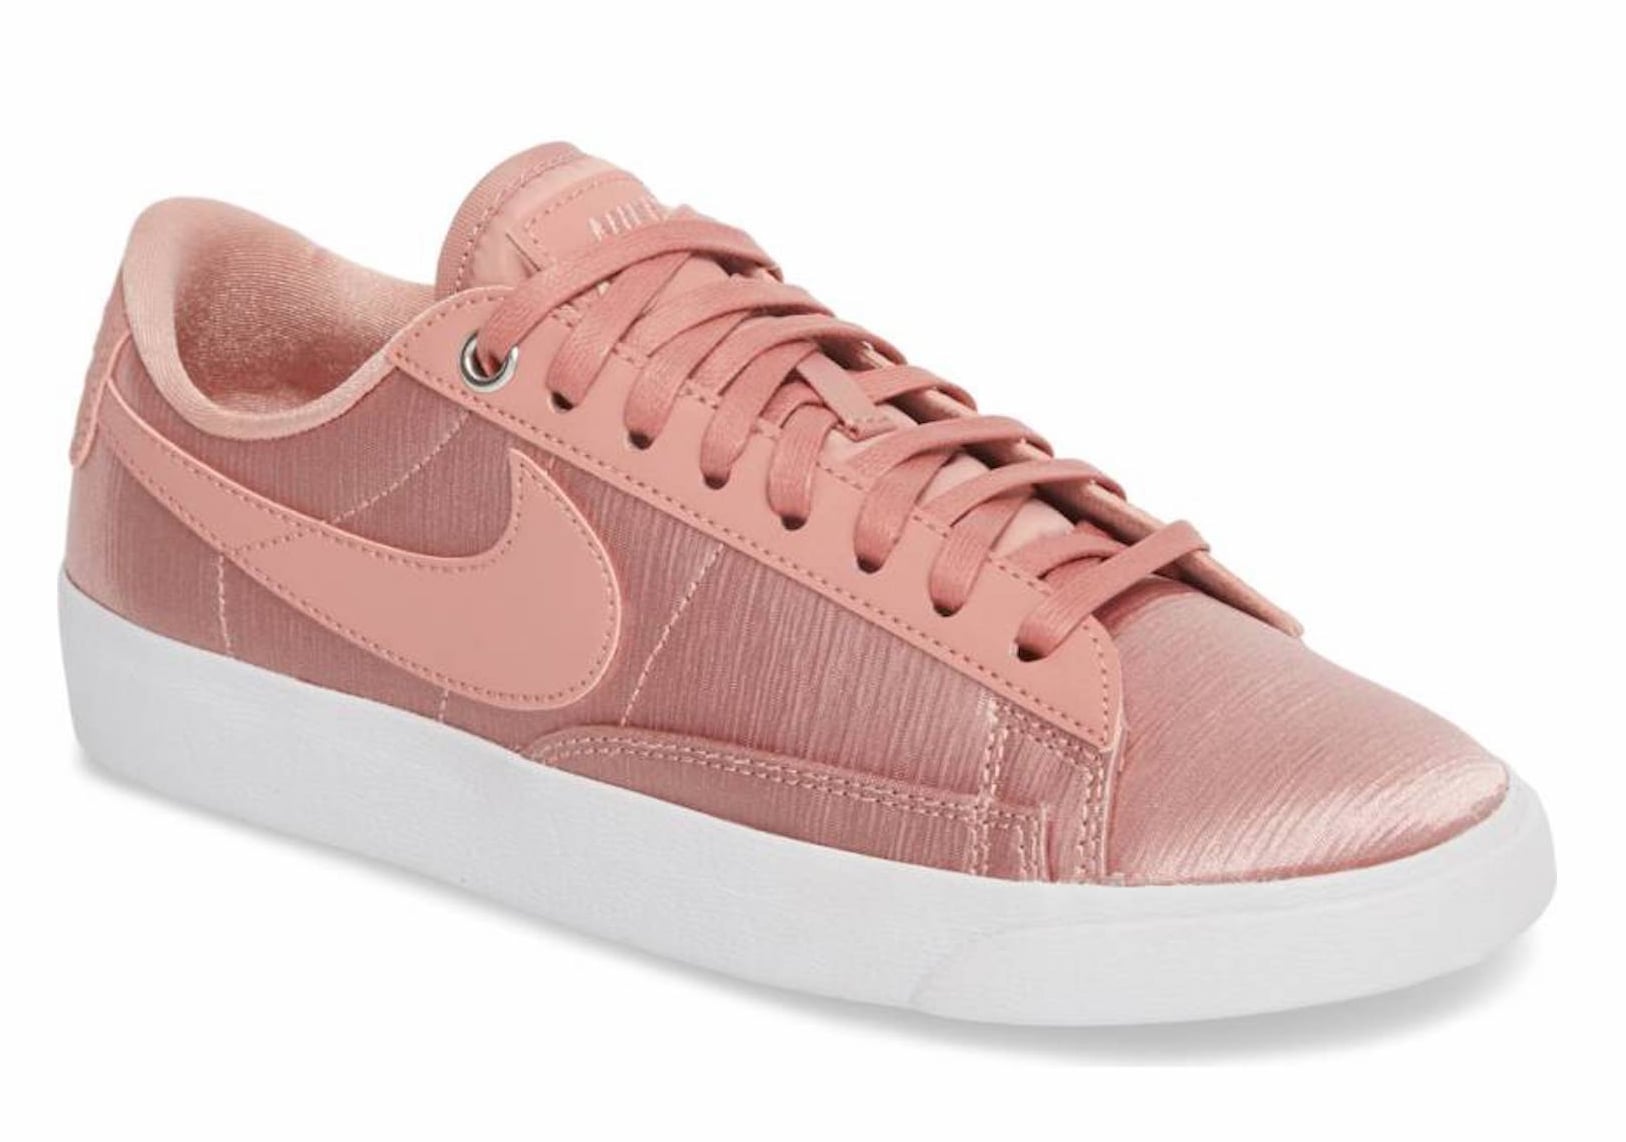 Metallic Pink Nike Sneakers 2018 | POPSUGAR Fashion